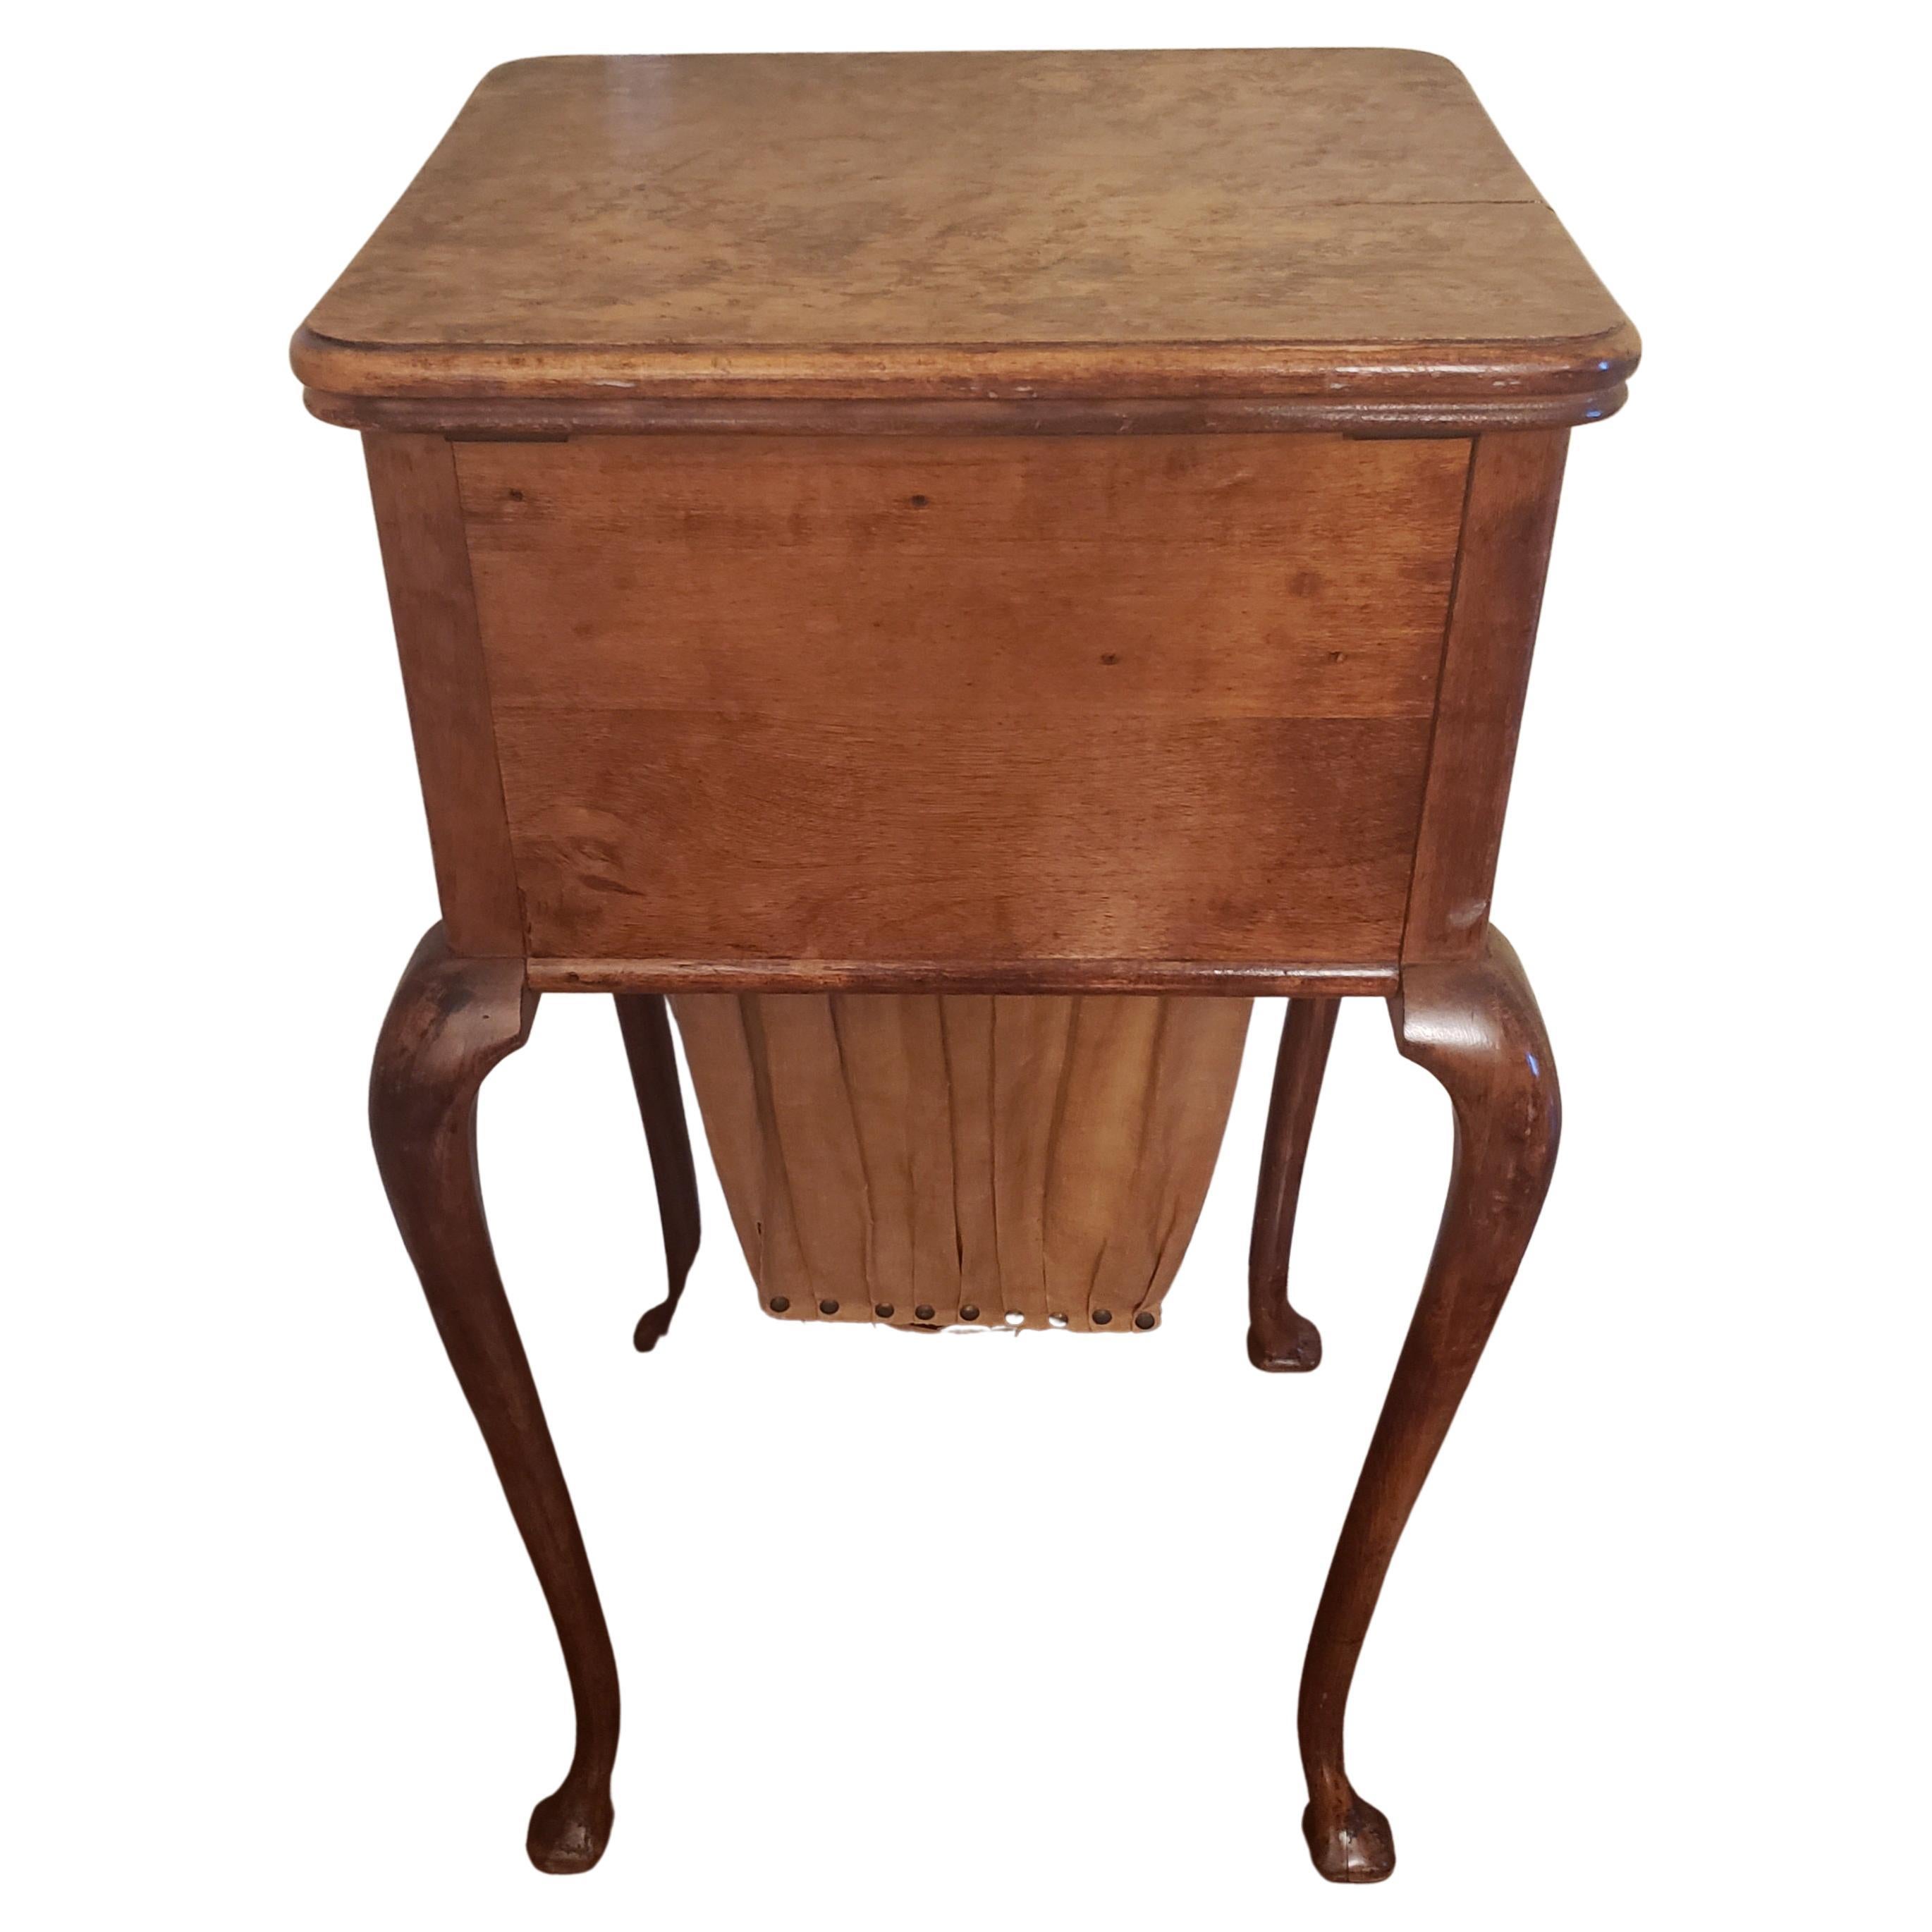 Dies ist ein alter englischer Nähtisch mit seiner originalen Tasche und Oberfläche. Dieser Tisch wird mit einer tiefen, schwalbenschwanzförmigen Schublade auf der rechten Seite geliefert. Die Oberseite lässt sich öffnen und gibt den Blick auf einen